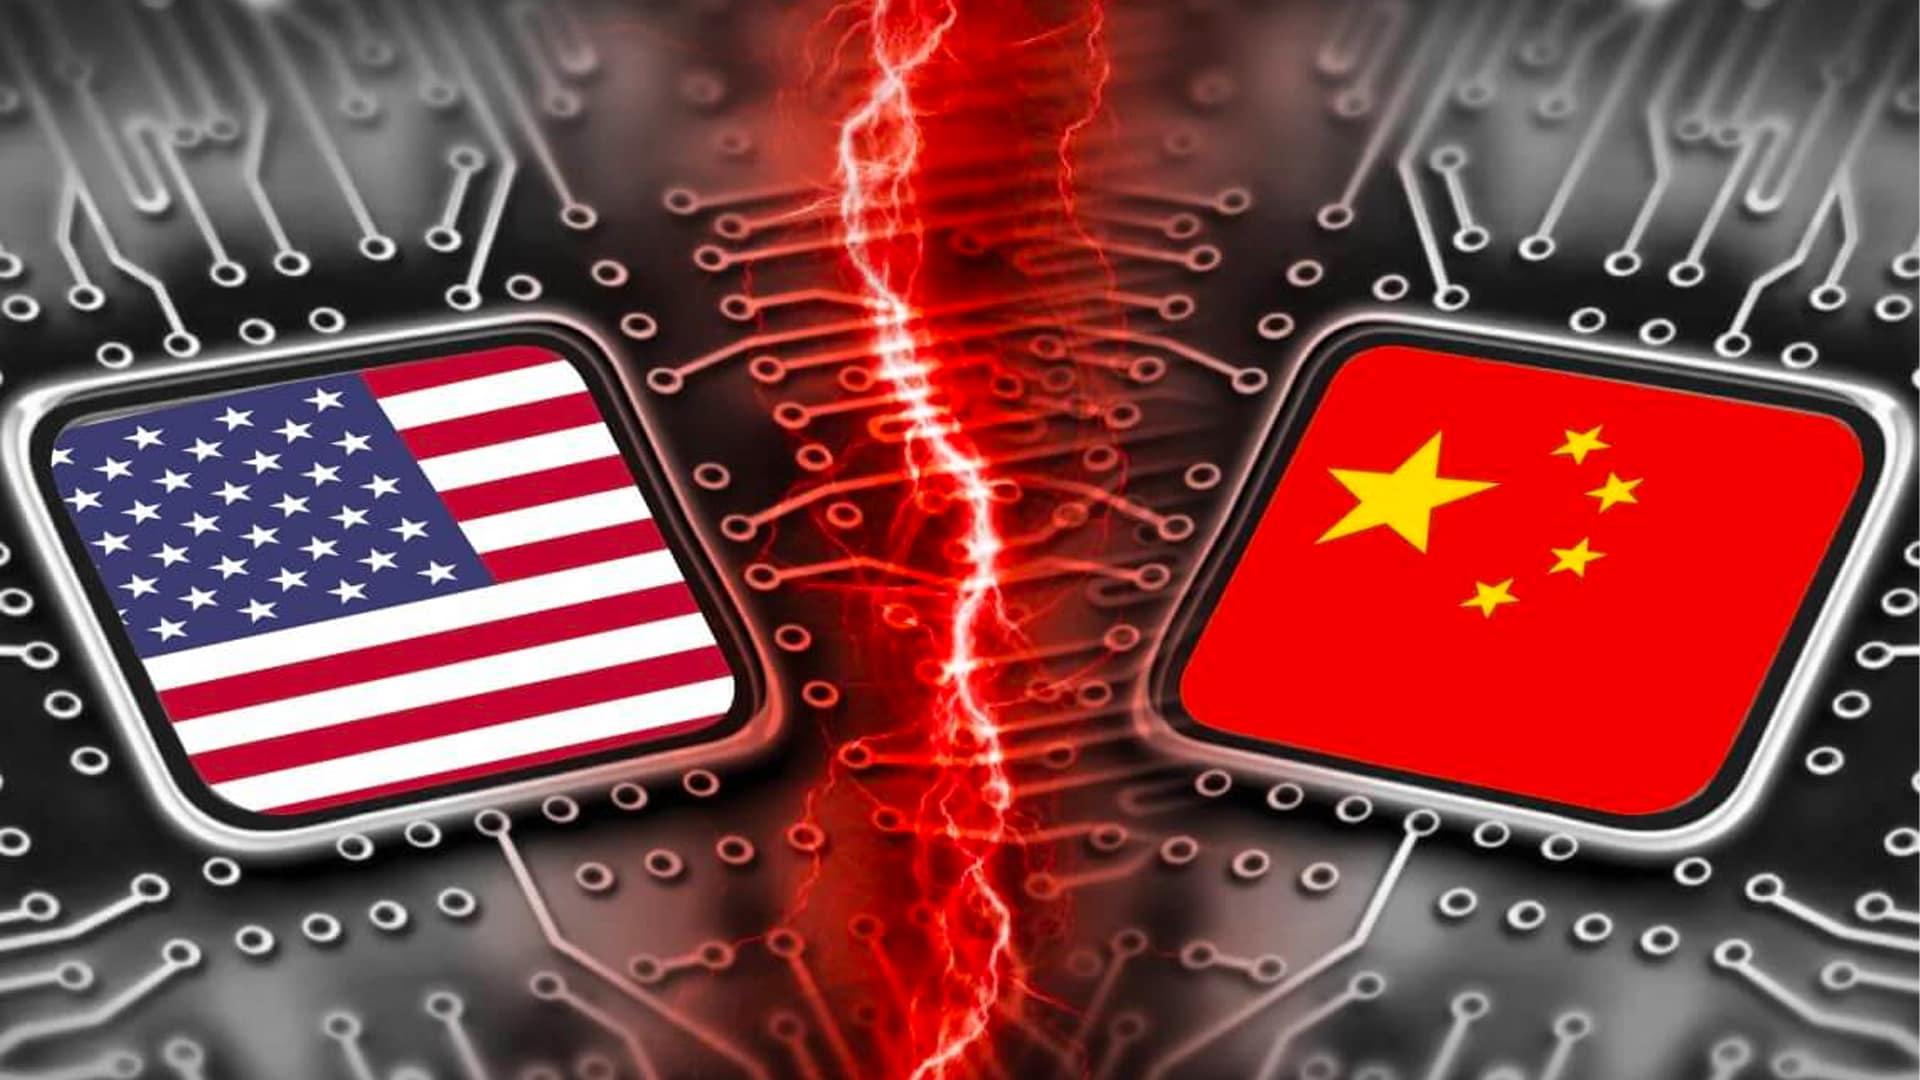 ایالات متحده شرکت های فناوری چینی بیشتری را به عنوان شاخه های نظامی معرفی می کند، ممکن است تحریم های بیشتری اعمال کند